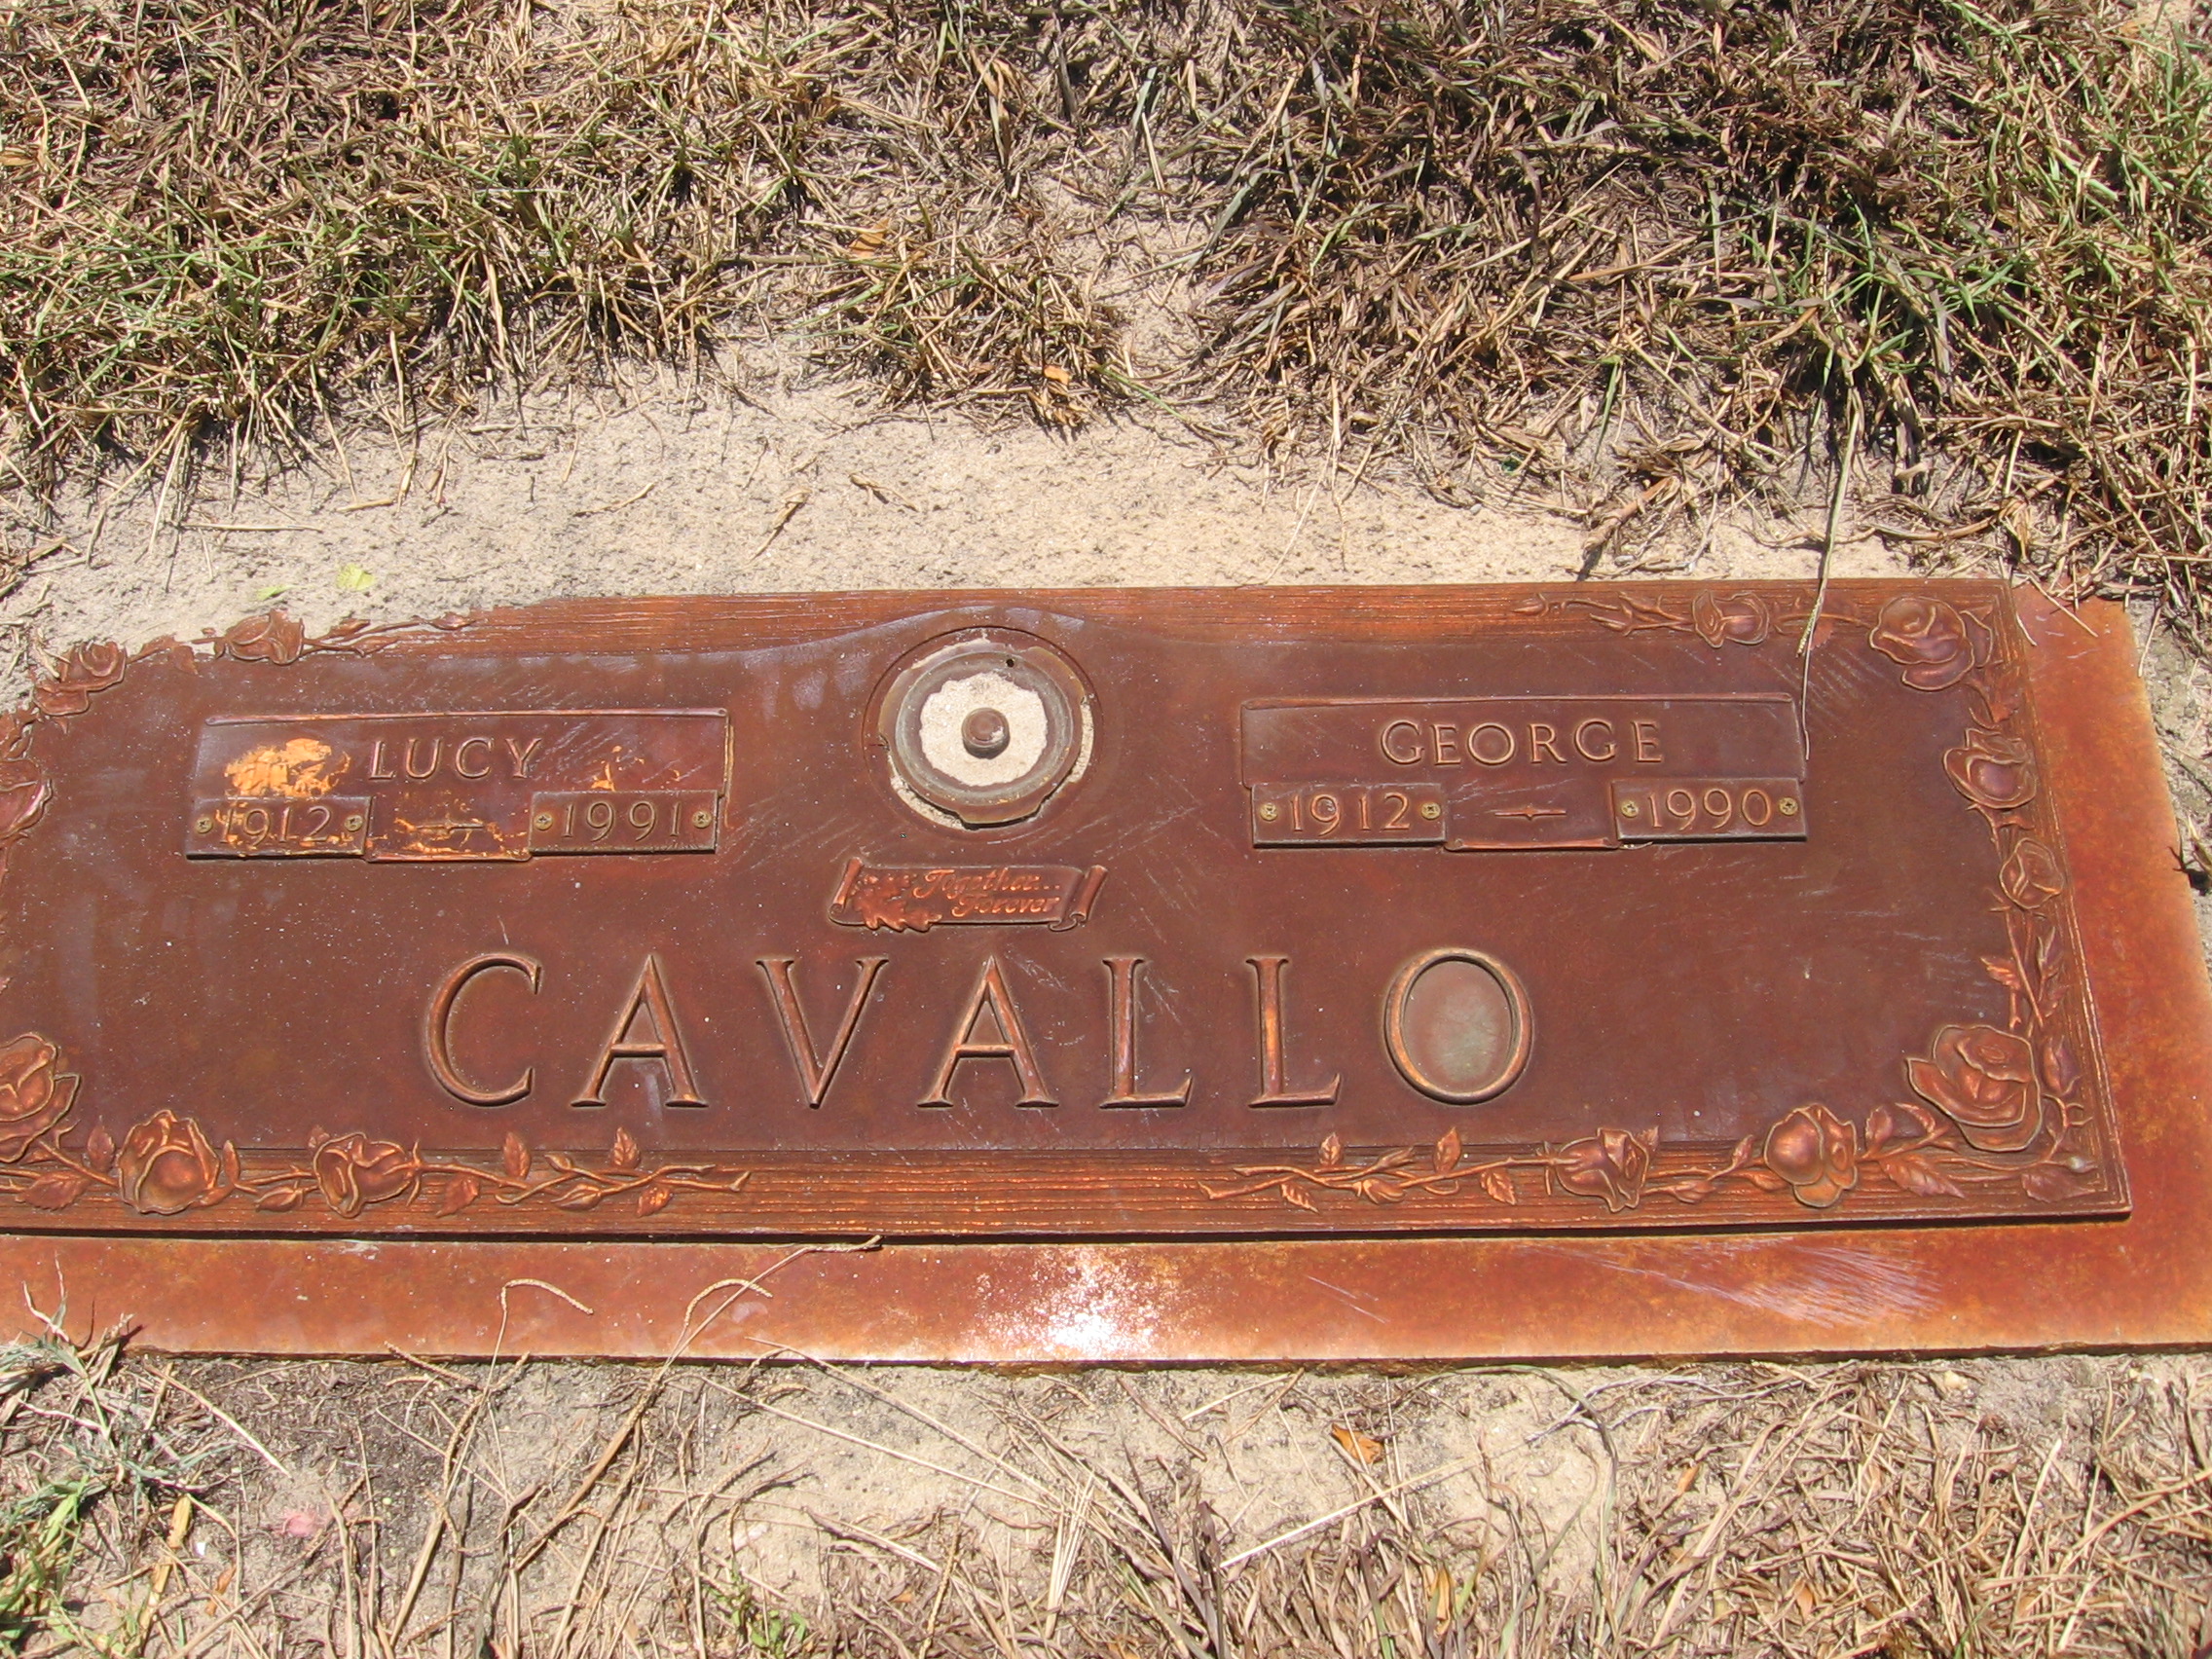 George Cavallo